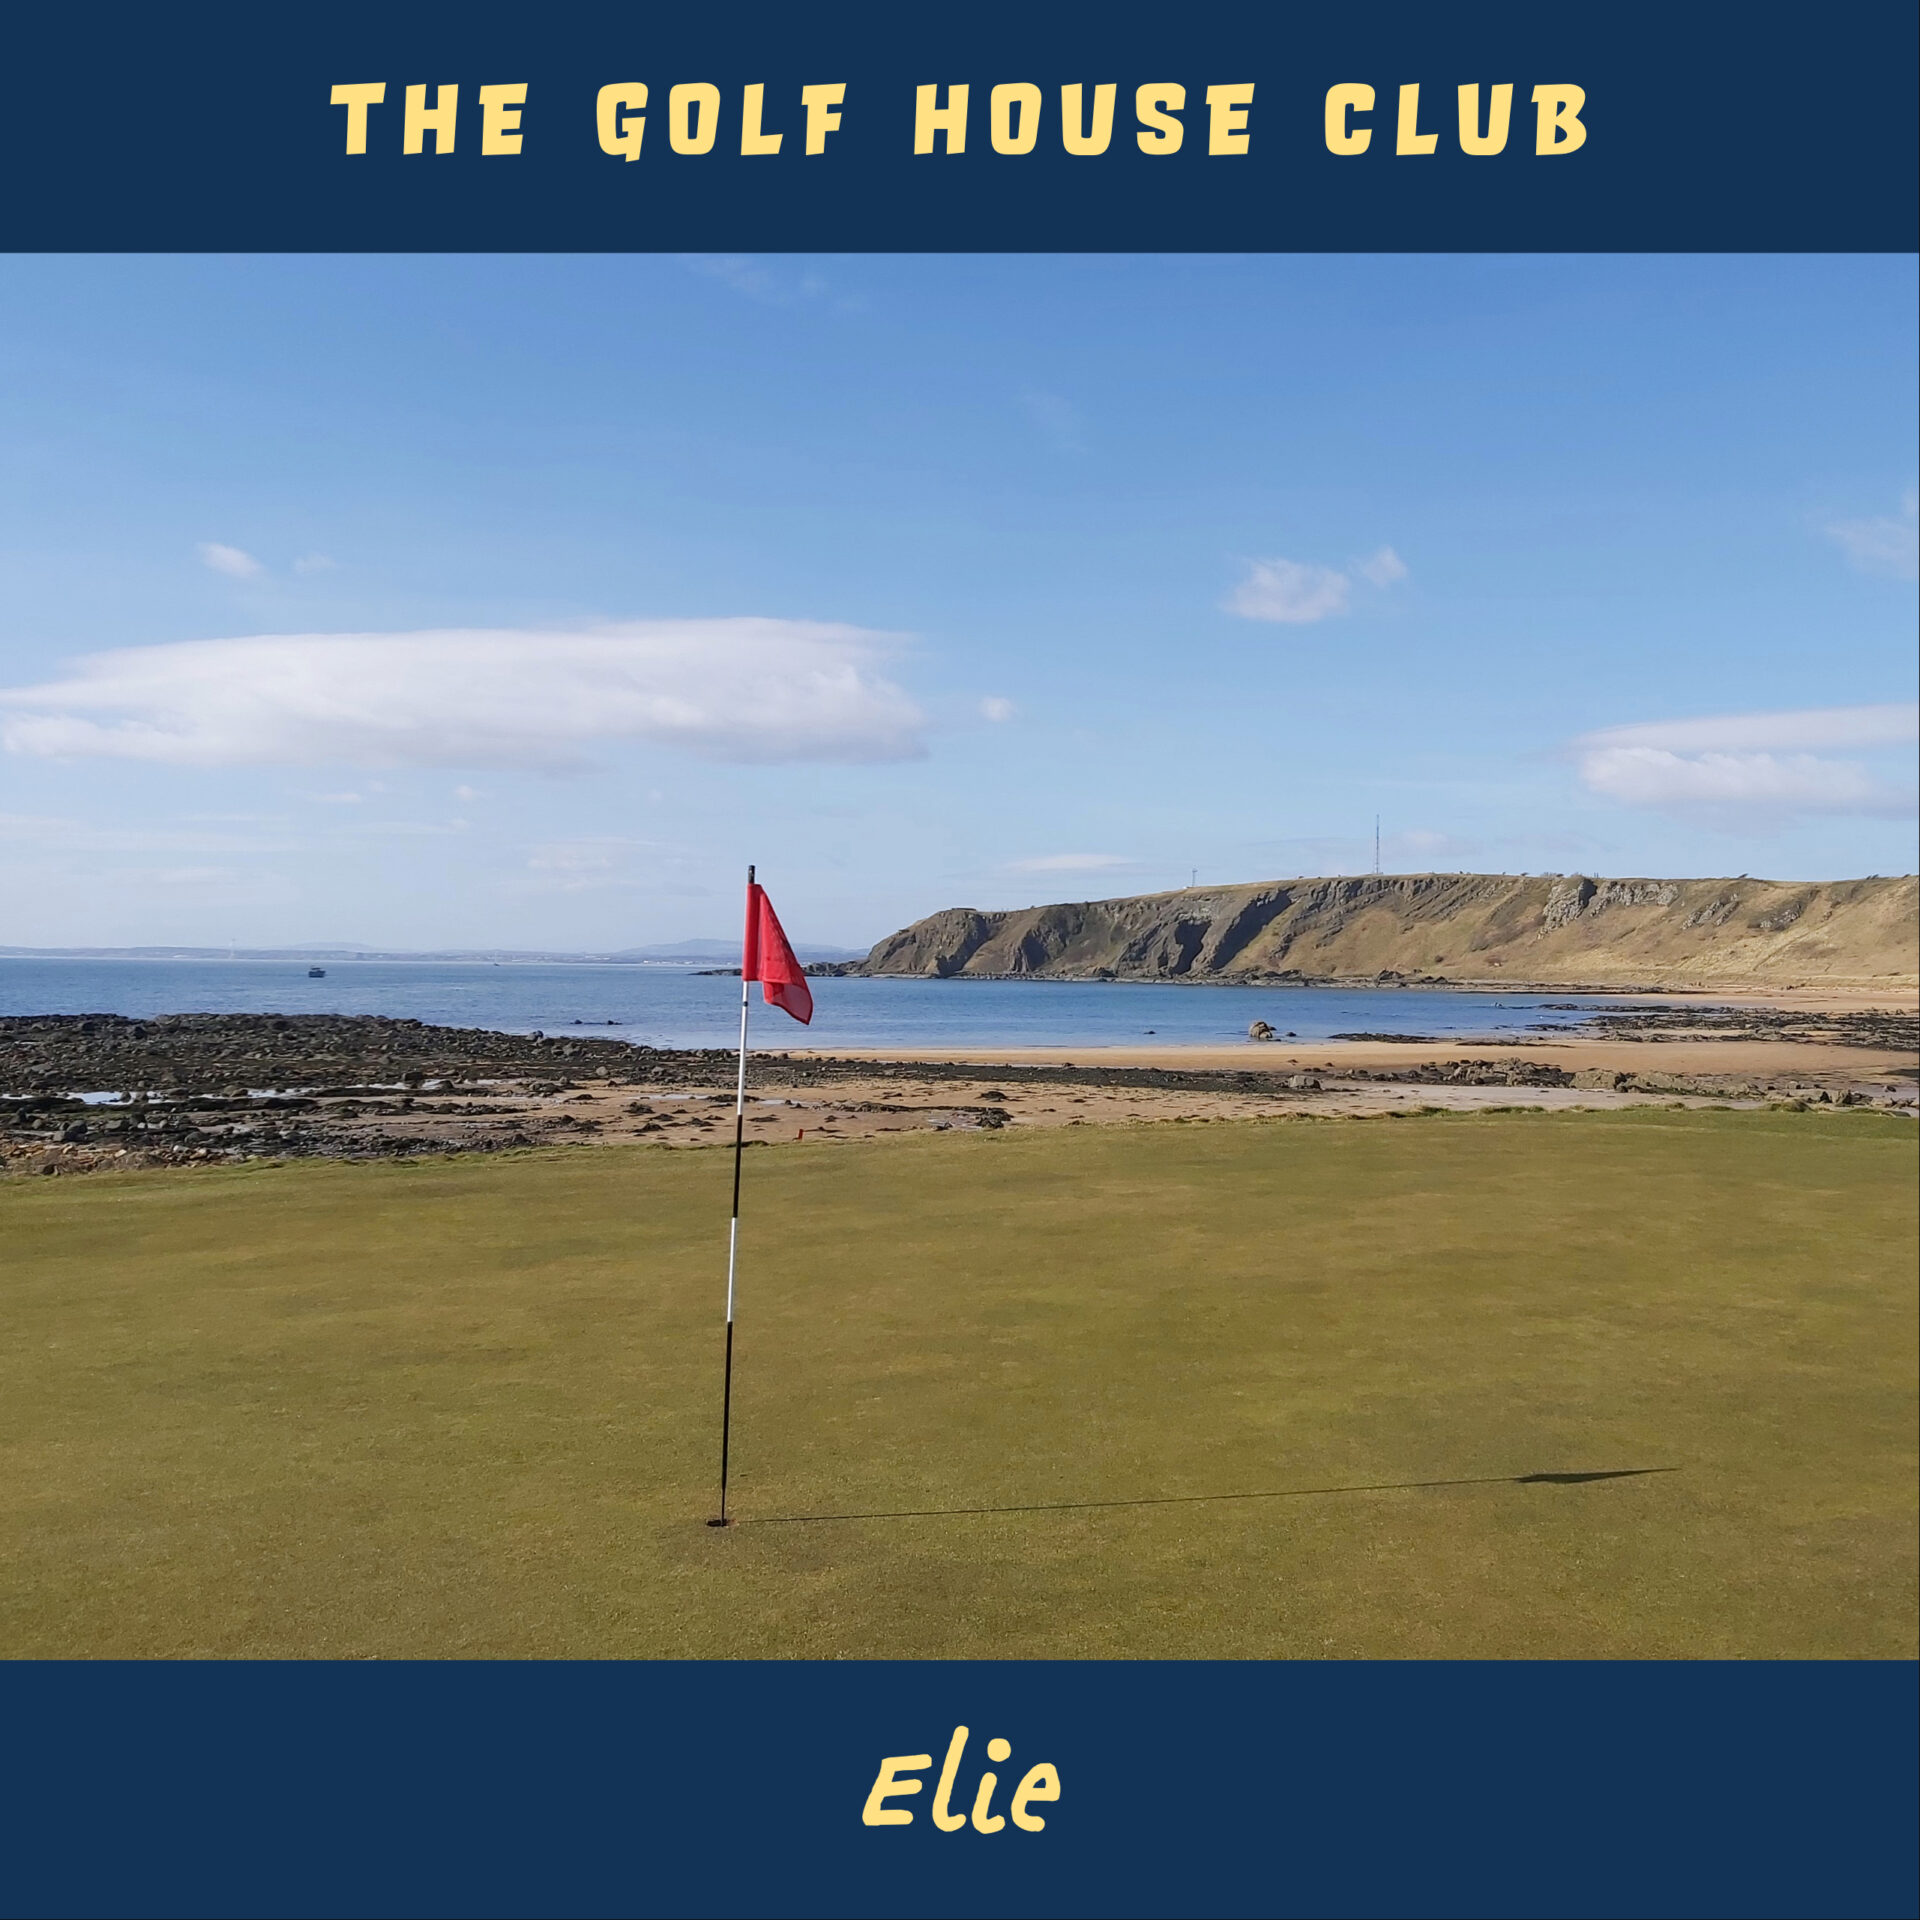 The Golf House Club, Elie